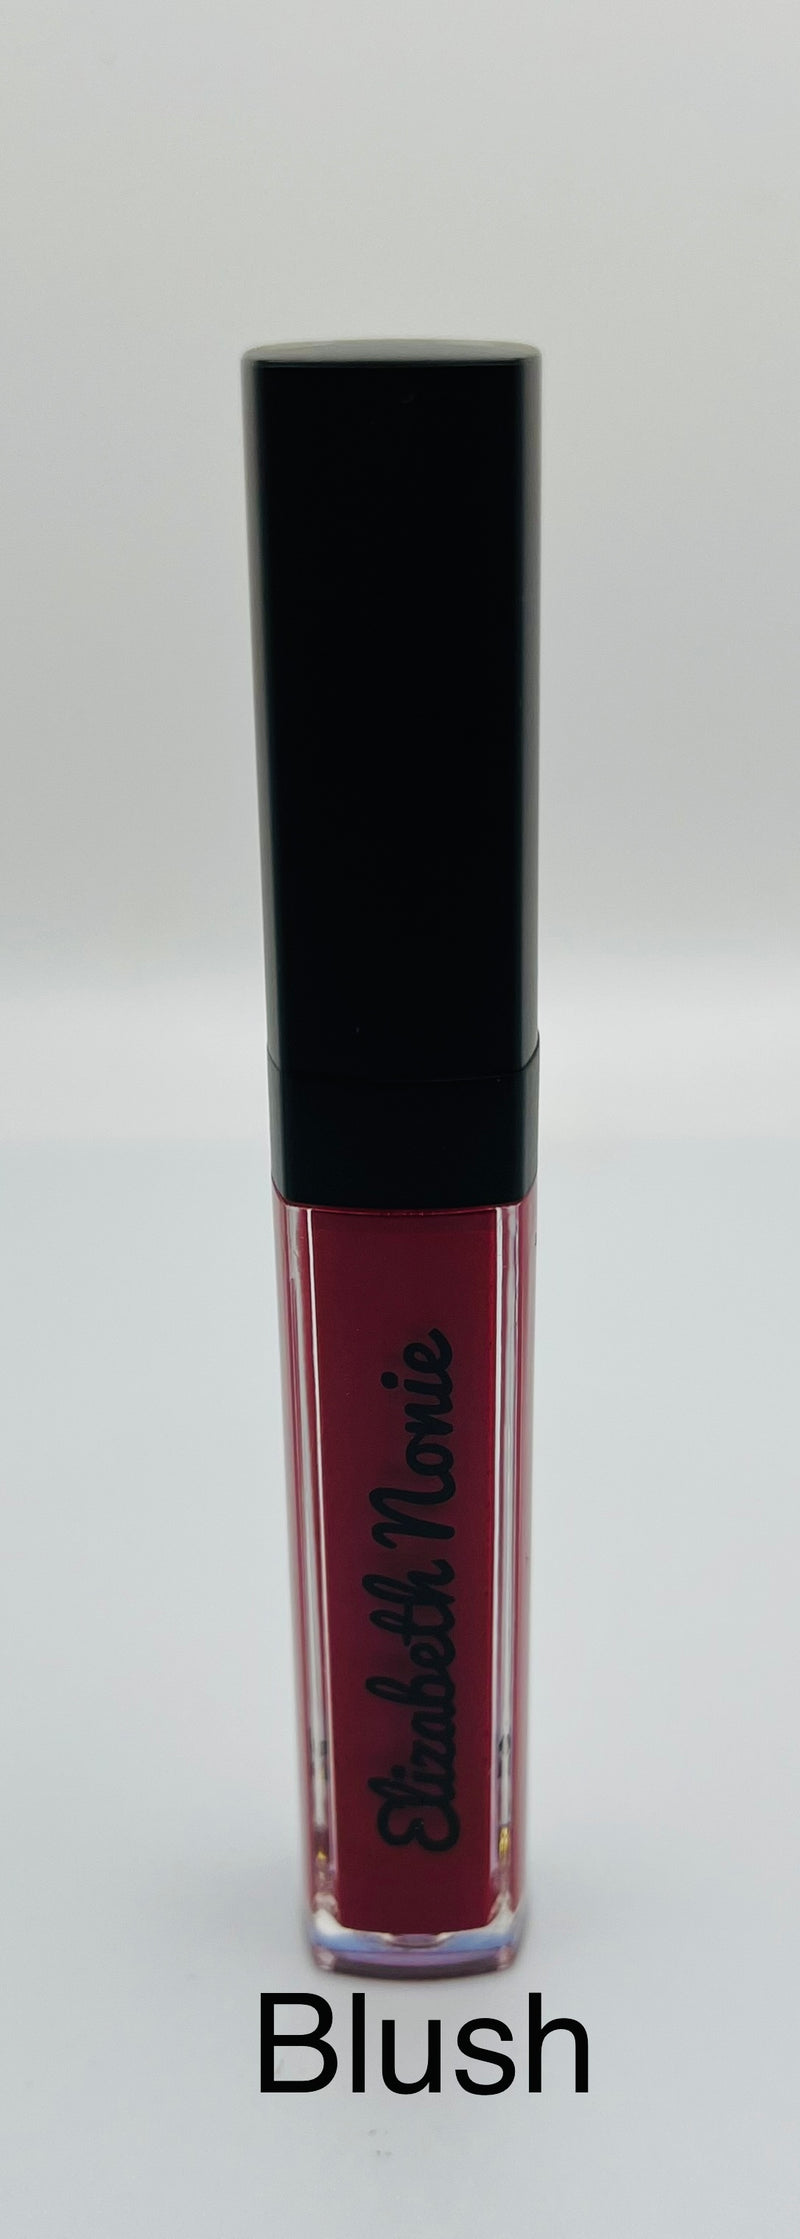 Blush Matte Liquid Lipstick